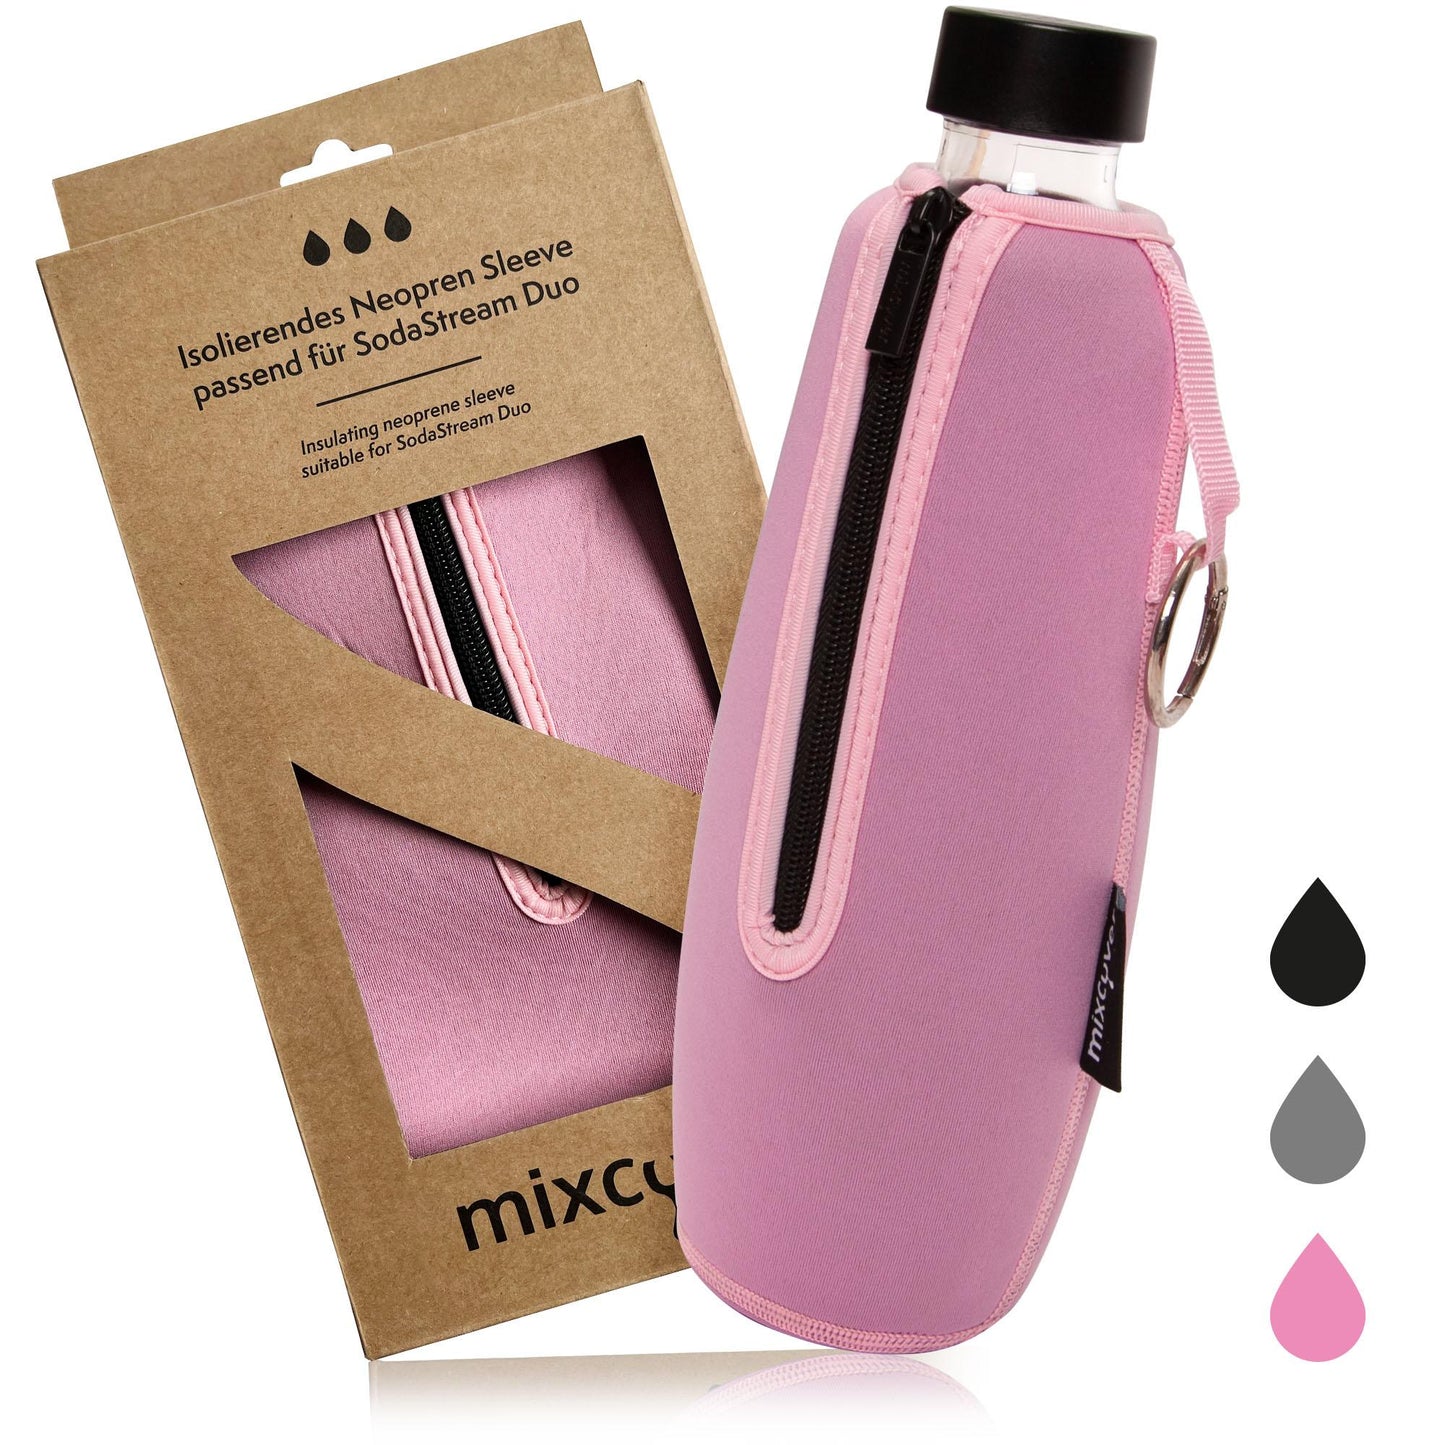 mixcover Manga de protección de botellas aislada compatible con botellas de vidrio dúo de sodastre Cubierta protectora para botellas, protección contra fracturas y rasguños, color rosa color